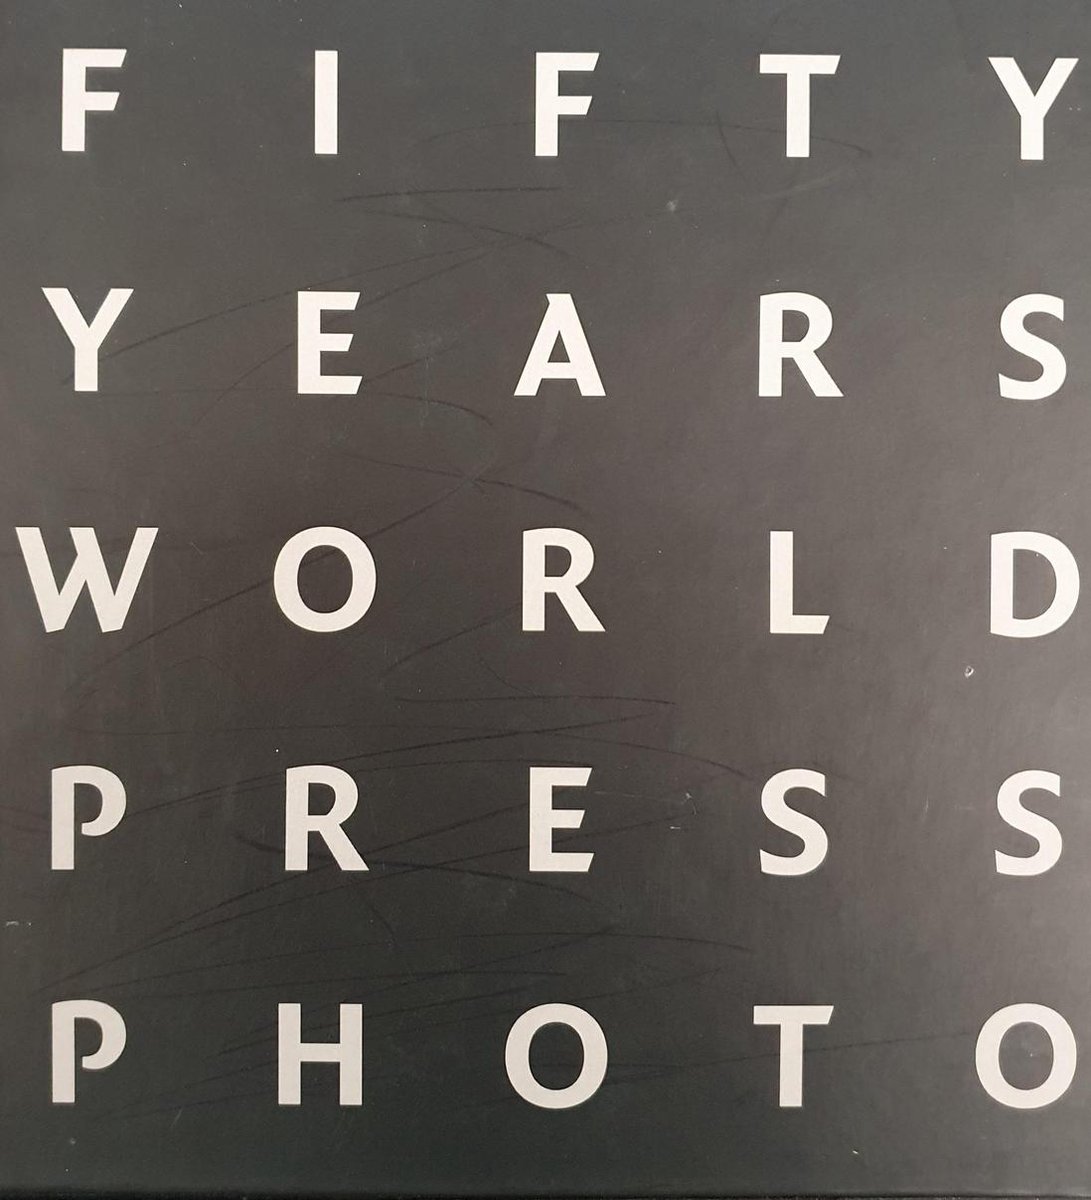 50 Years World Press